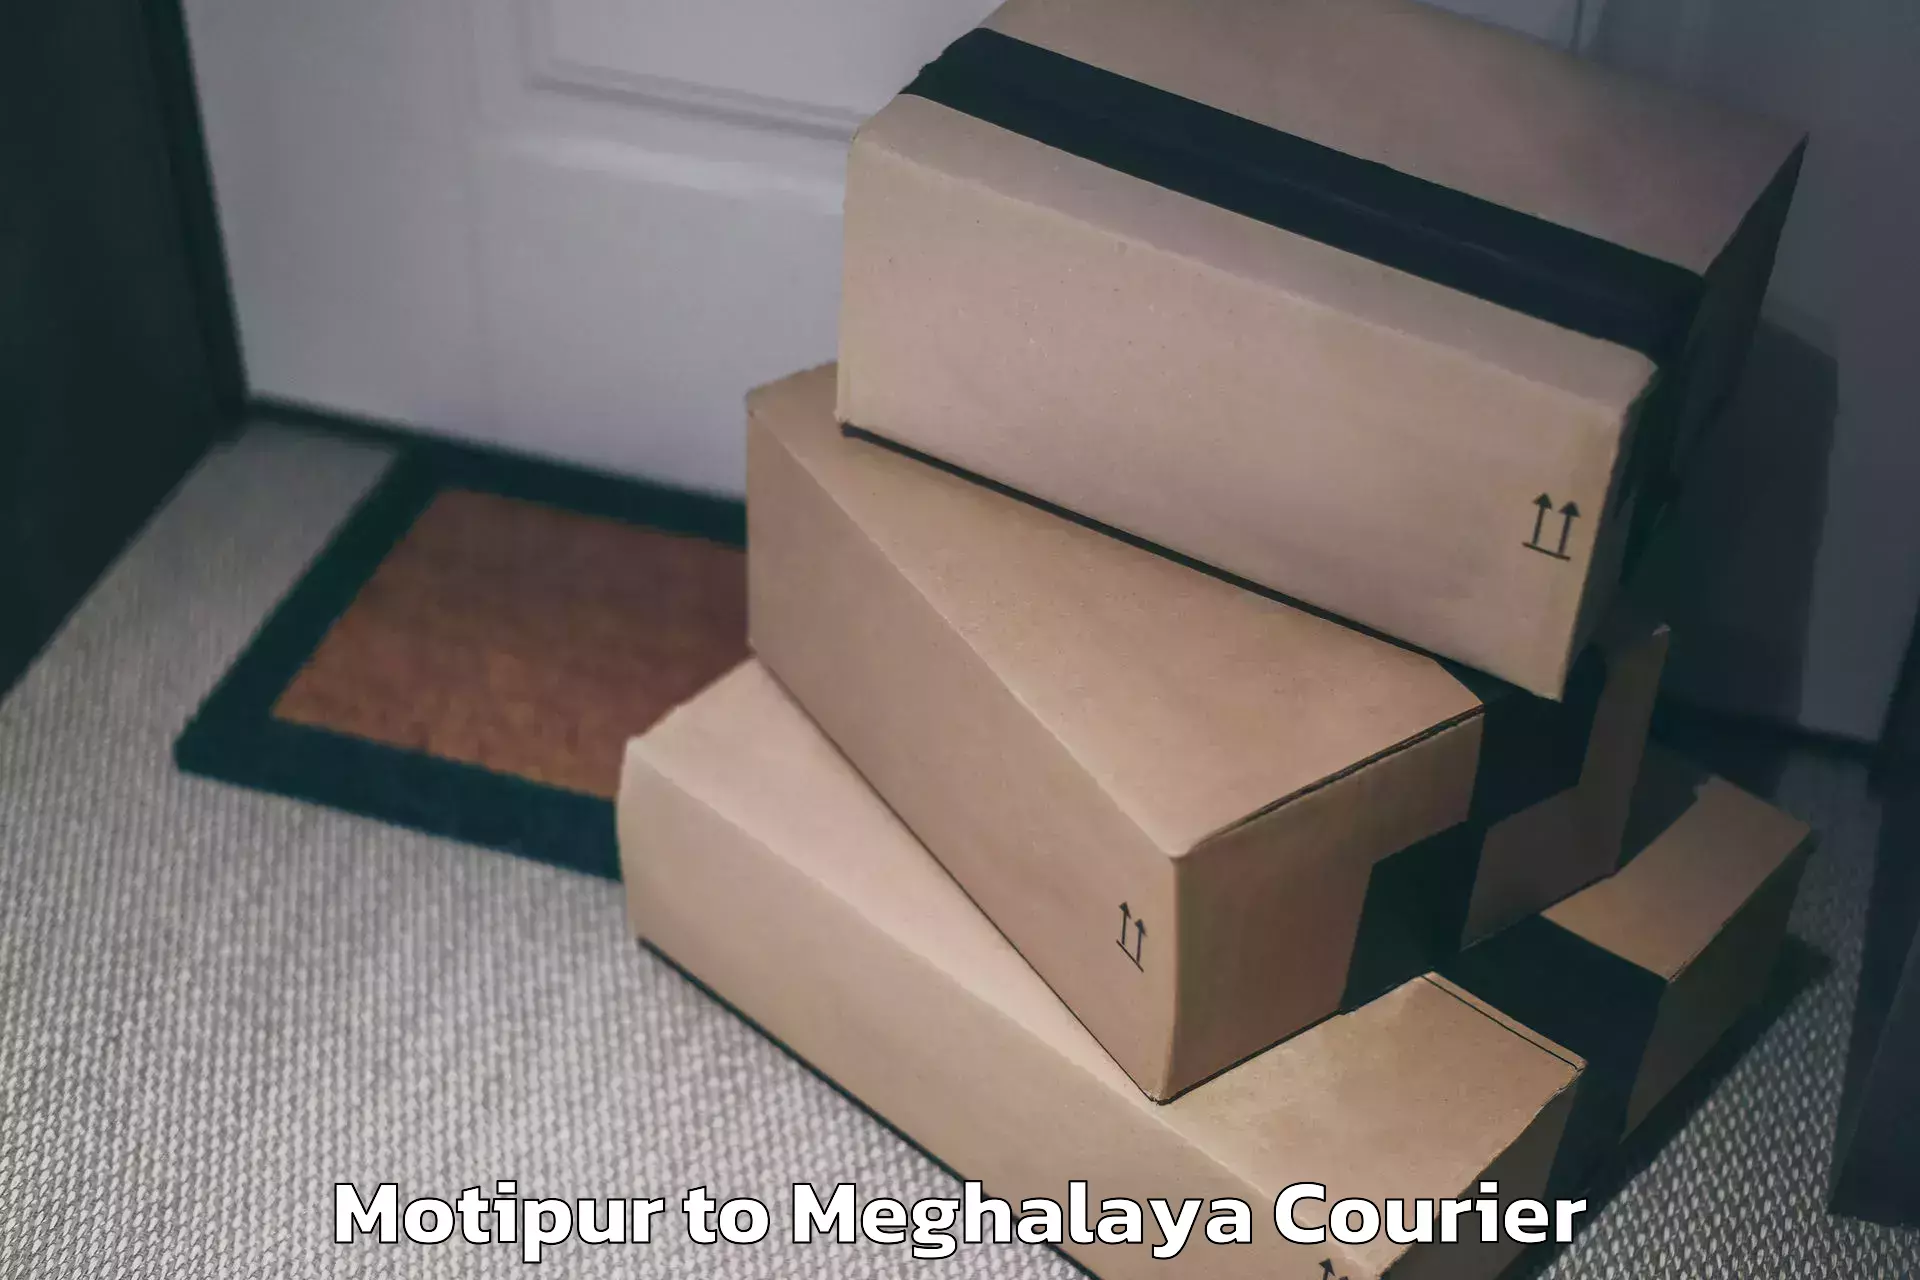 Luggage transport company Motipur to Meghalaya